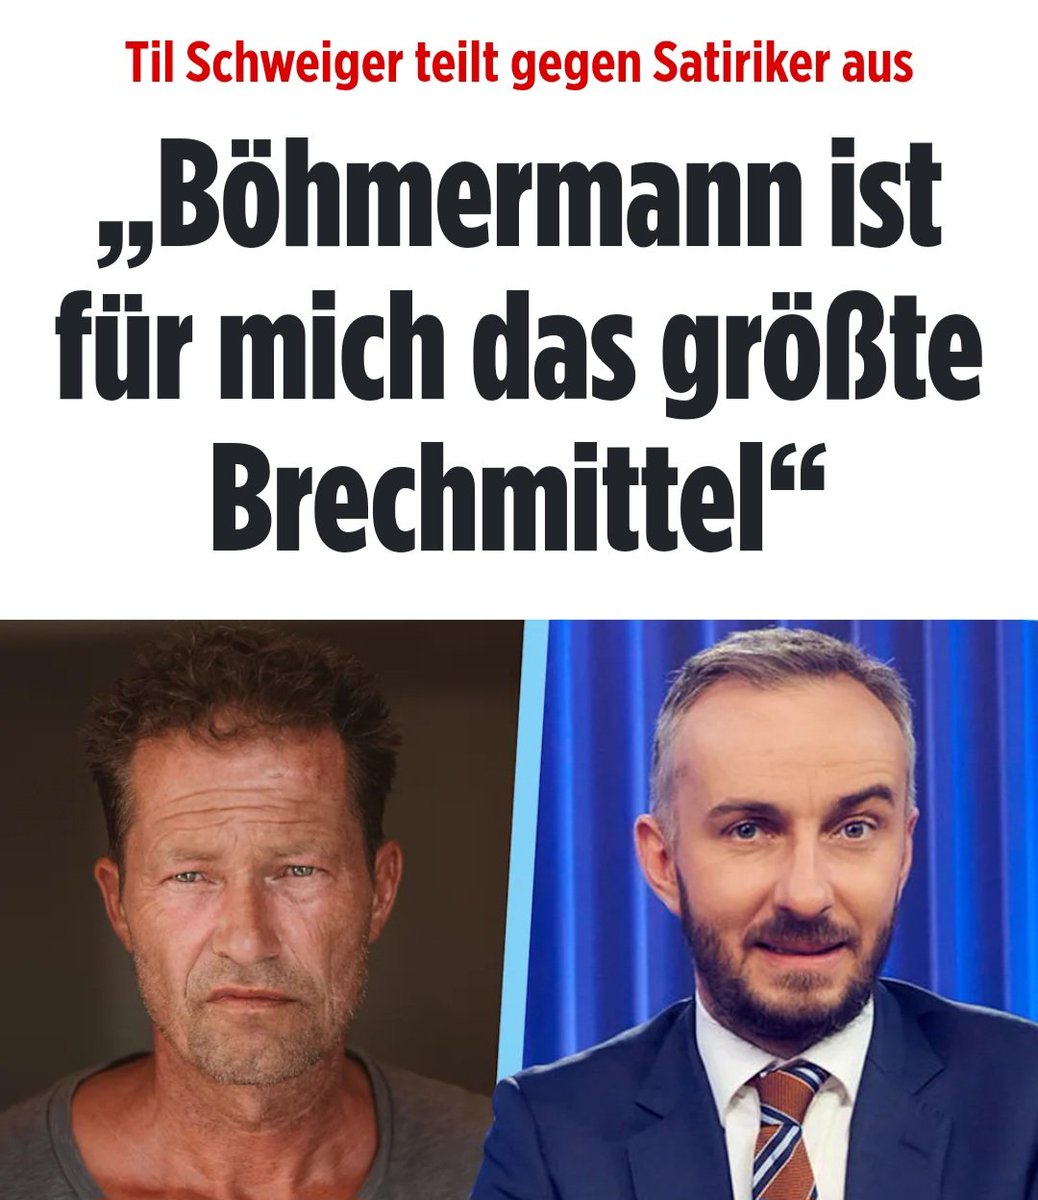 Til #Schweiger äußert sich ungewöhnlich deutlich über Jan #Böhmermann: 'Böhmermann ist für mich das größte Brechmittel in der deutschen Medienlandschaft', sagte er in einem Interview. Womit er vermutlich vielen Menschen aus der Seele spricht! 😃😁 m.bild.de/unterhaltung/s…